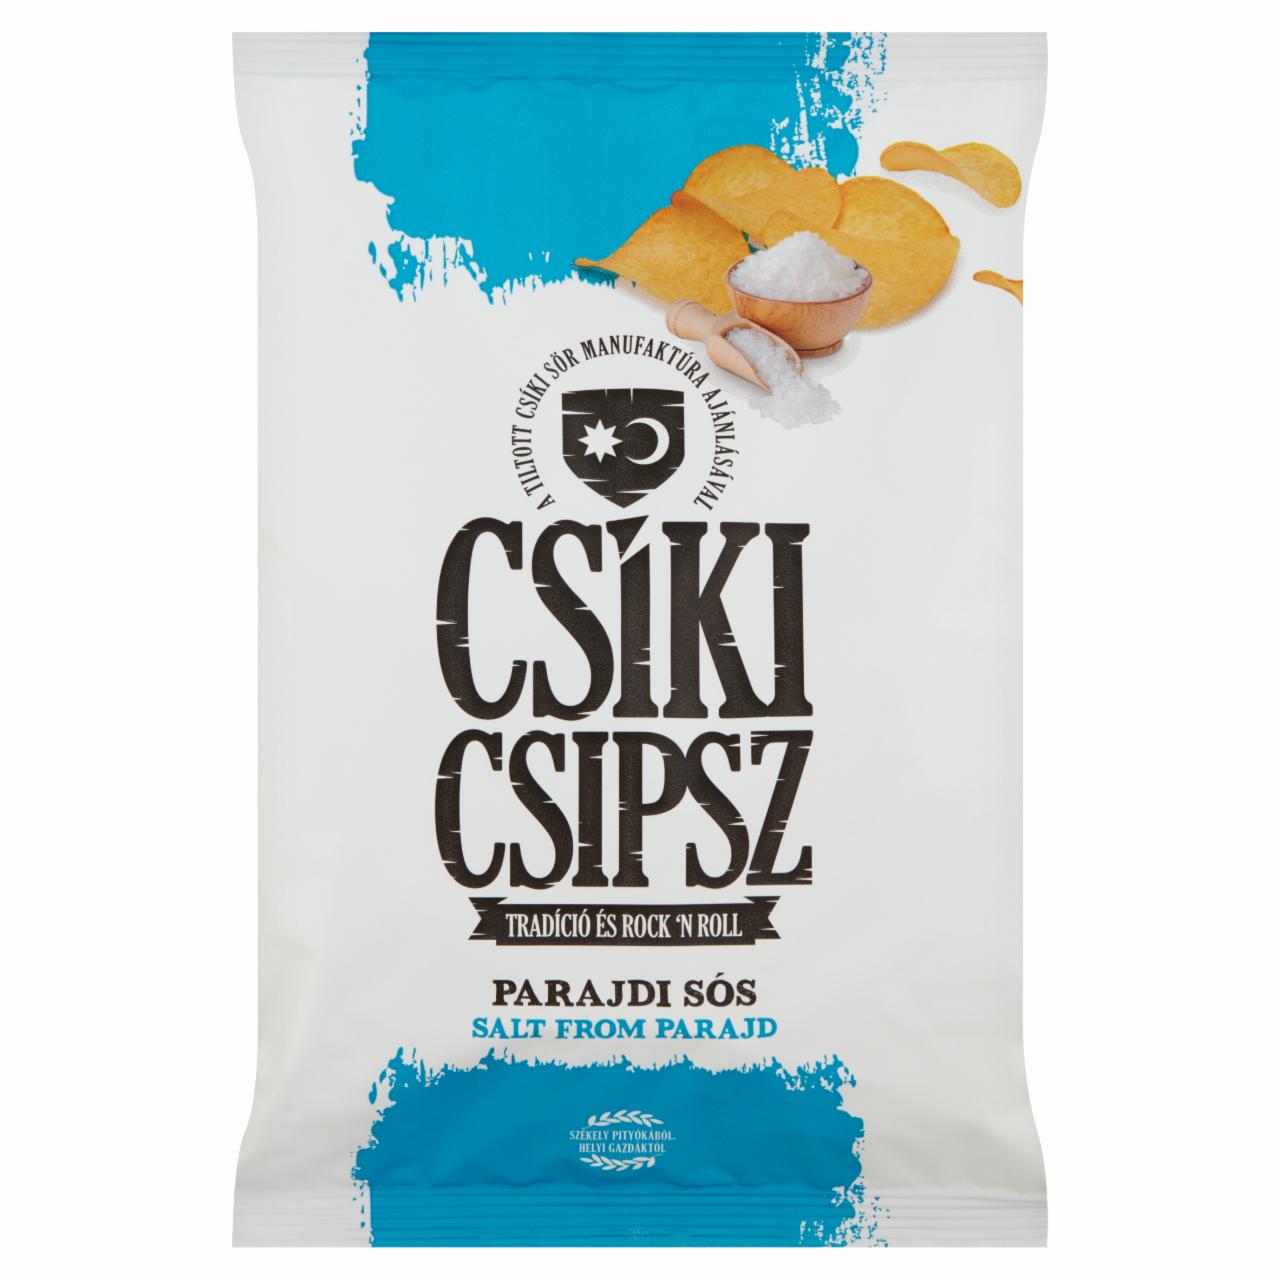 Képek - Csíki Csipsz parajdi sós ízesítésű burgonyacsipsz 70 g